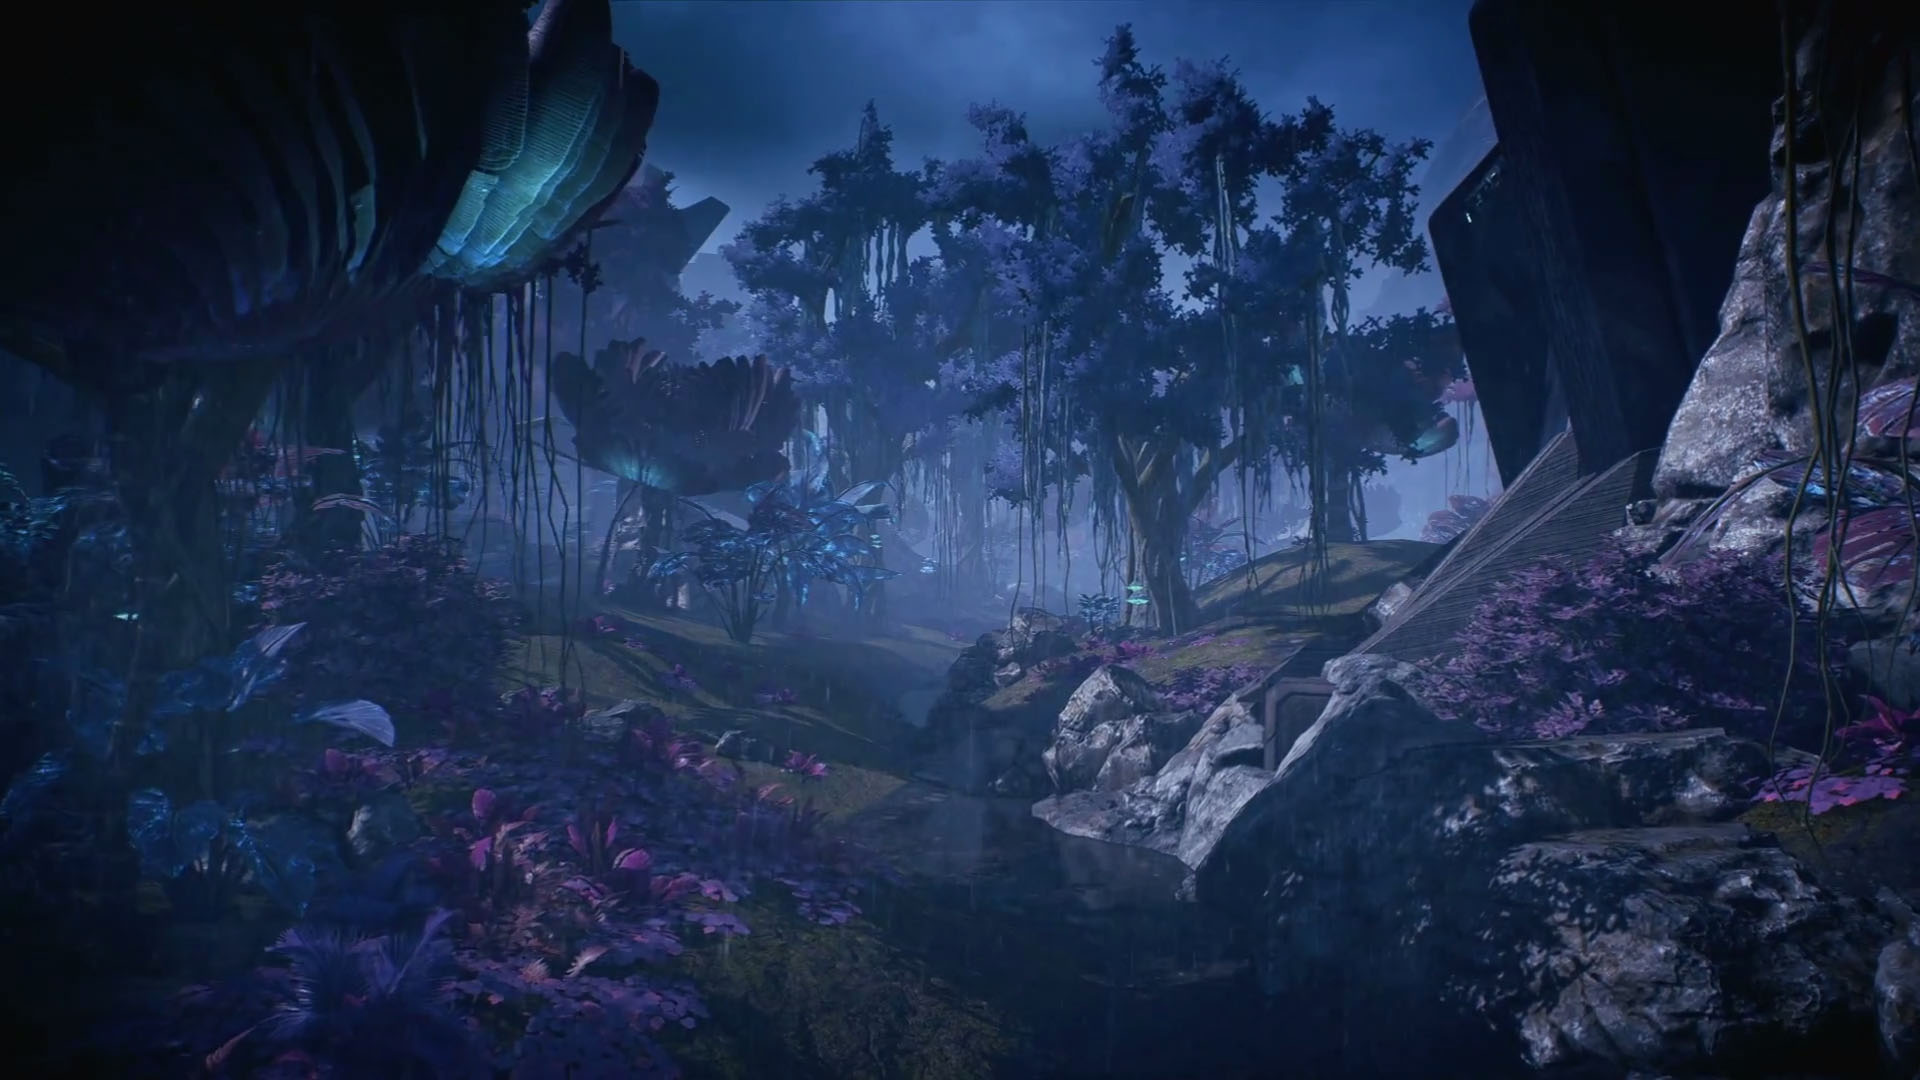 Скриншот из геймплейного. видеоролика Mass Effect: Andromeda. 